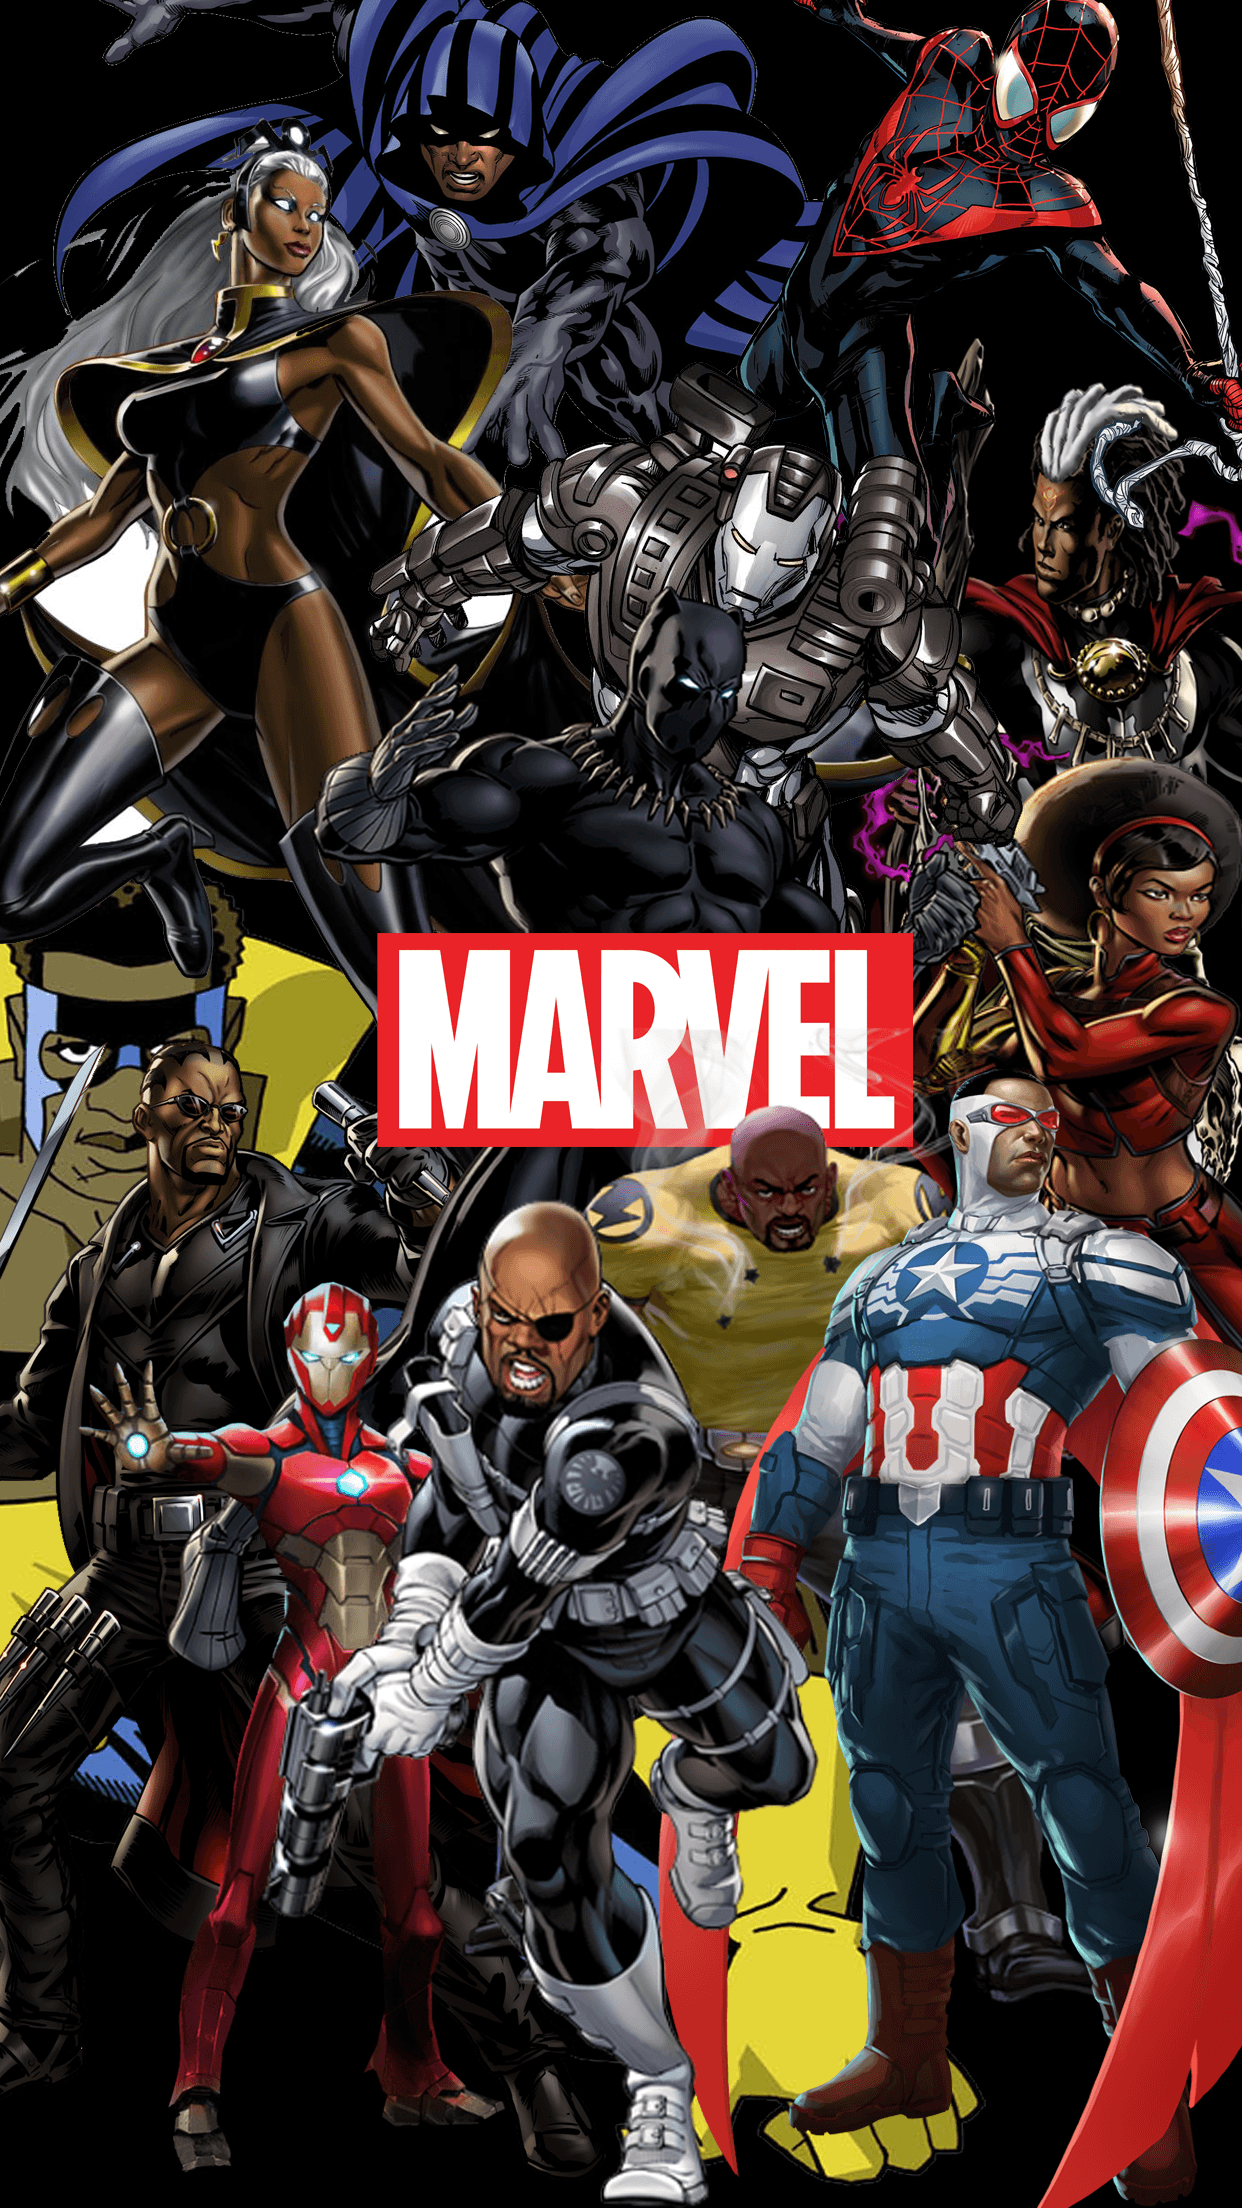 Avengers Endgame Wallpaper iPhone X Stream 4K Online